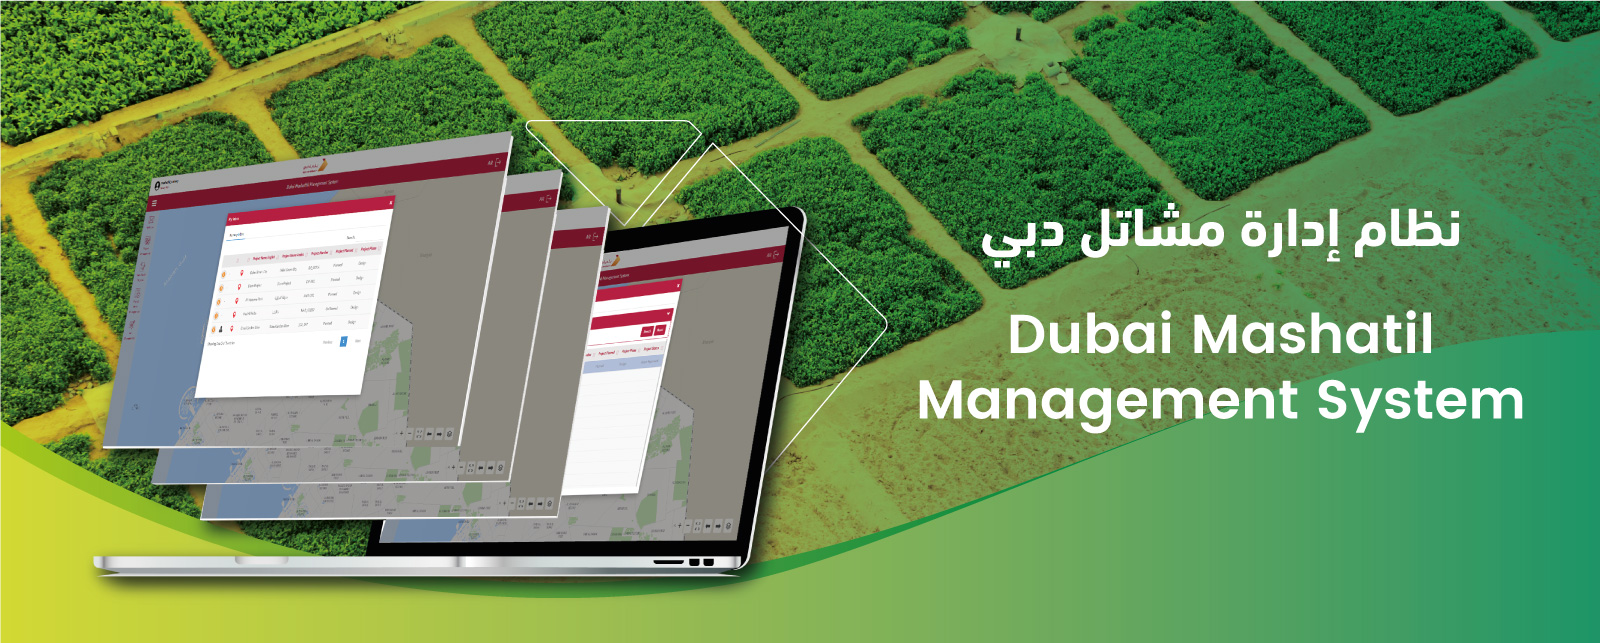 Dubai Mashatil Management System